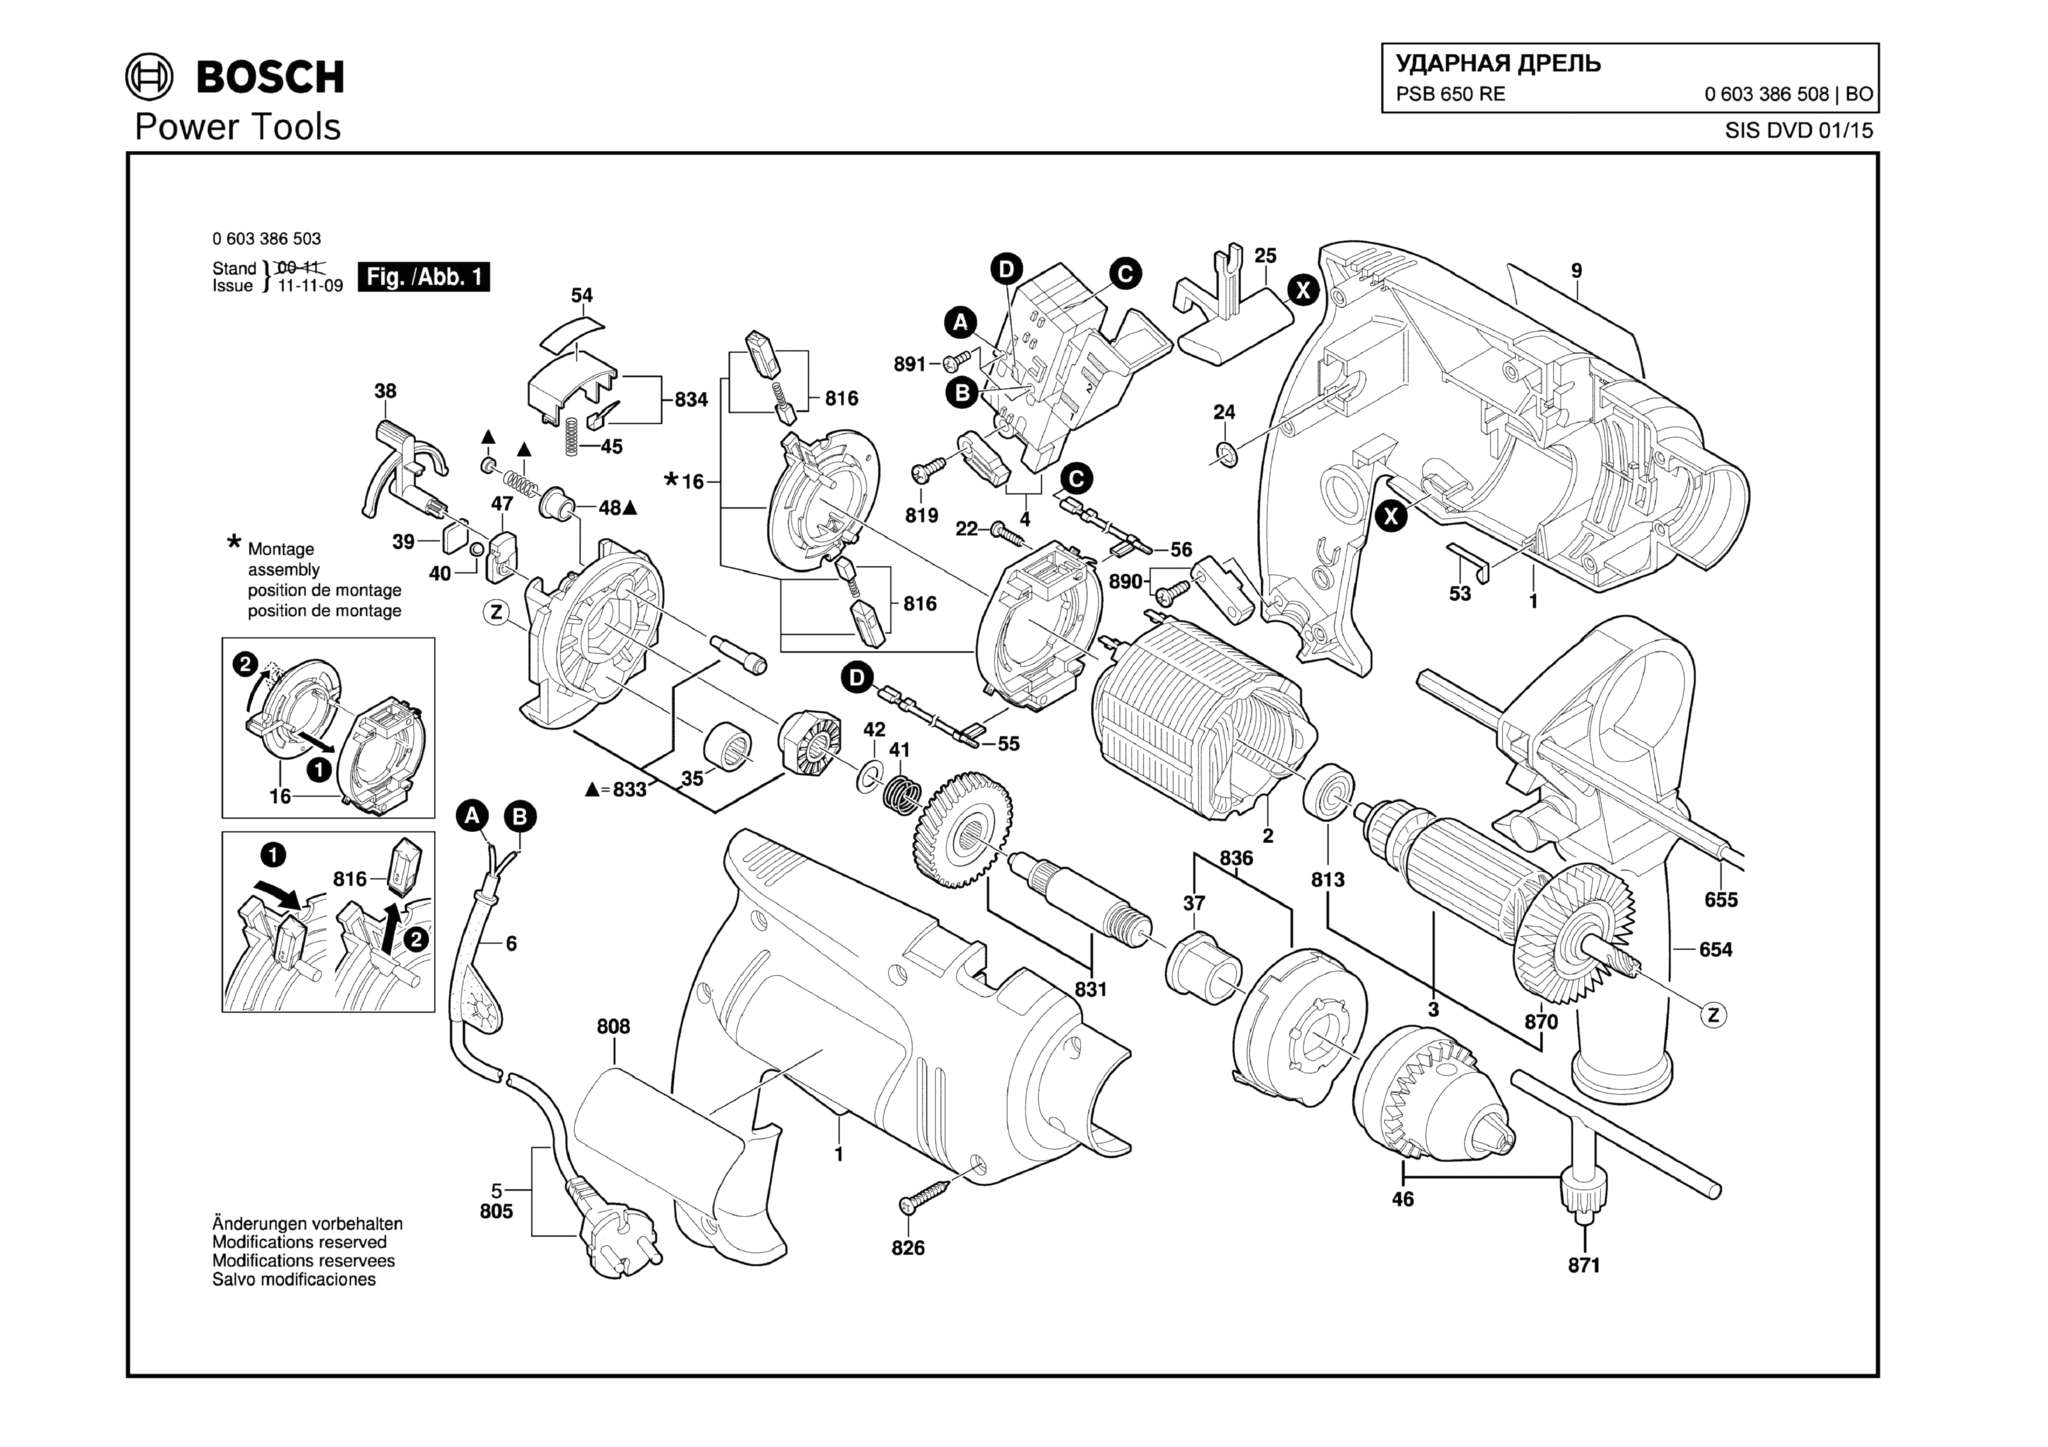 Запчасти, схема и деталировка Bosch PSB 650 RE (ТИП 0603386508)